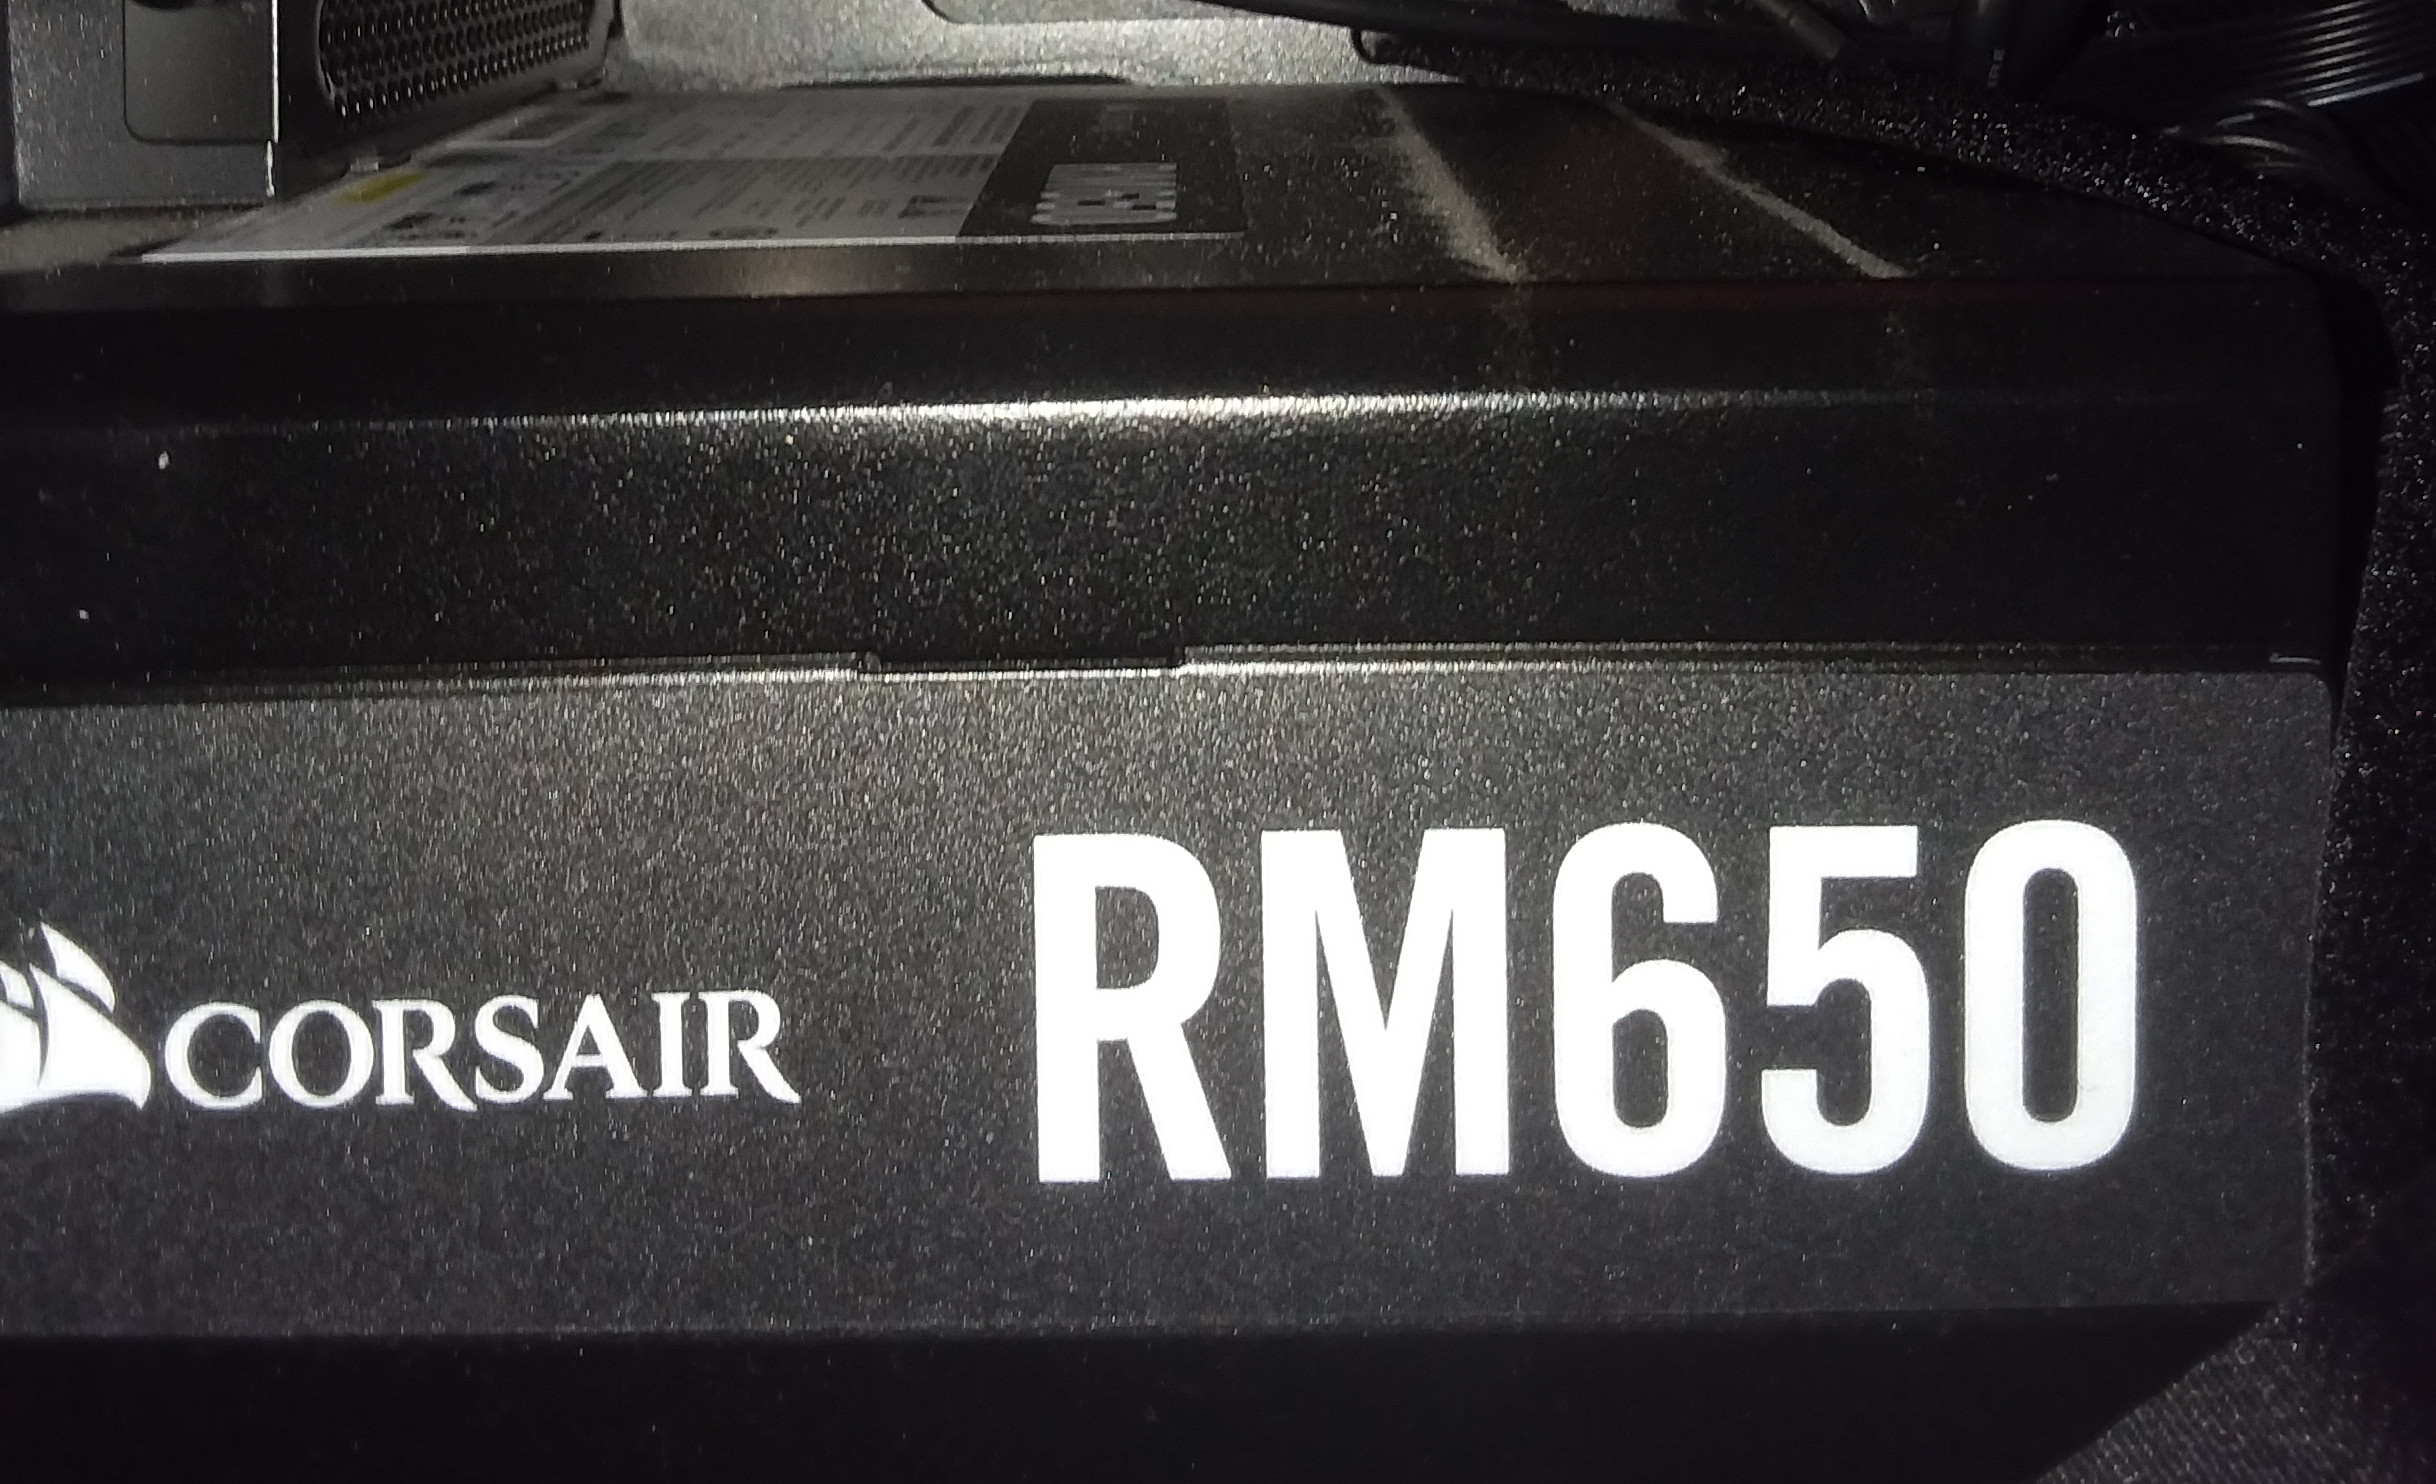 Corsair-RM650-CloseUp.jpg